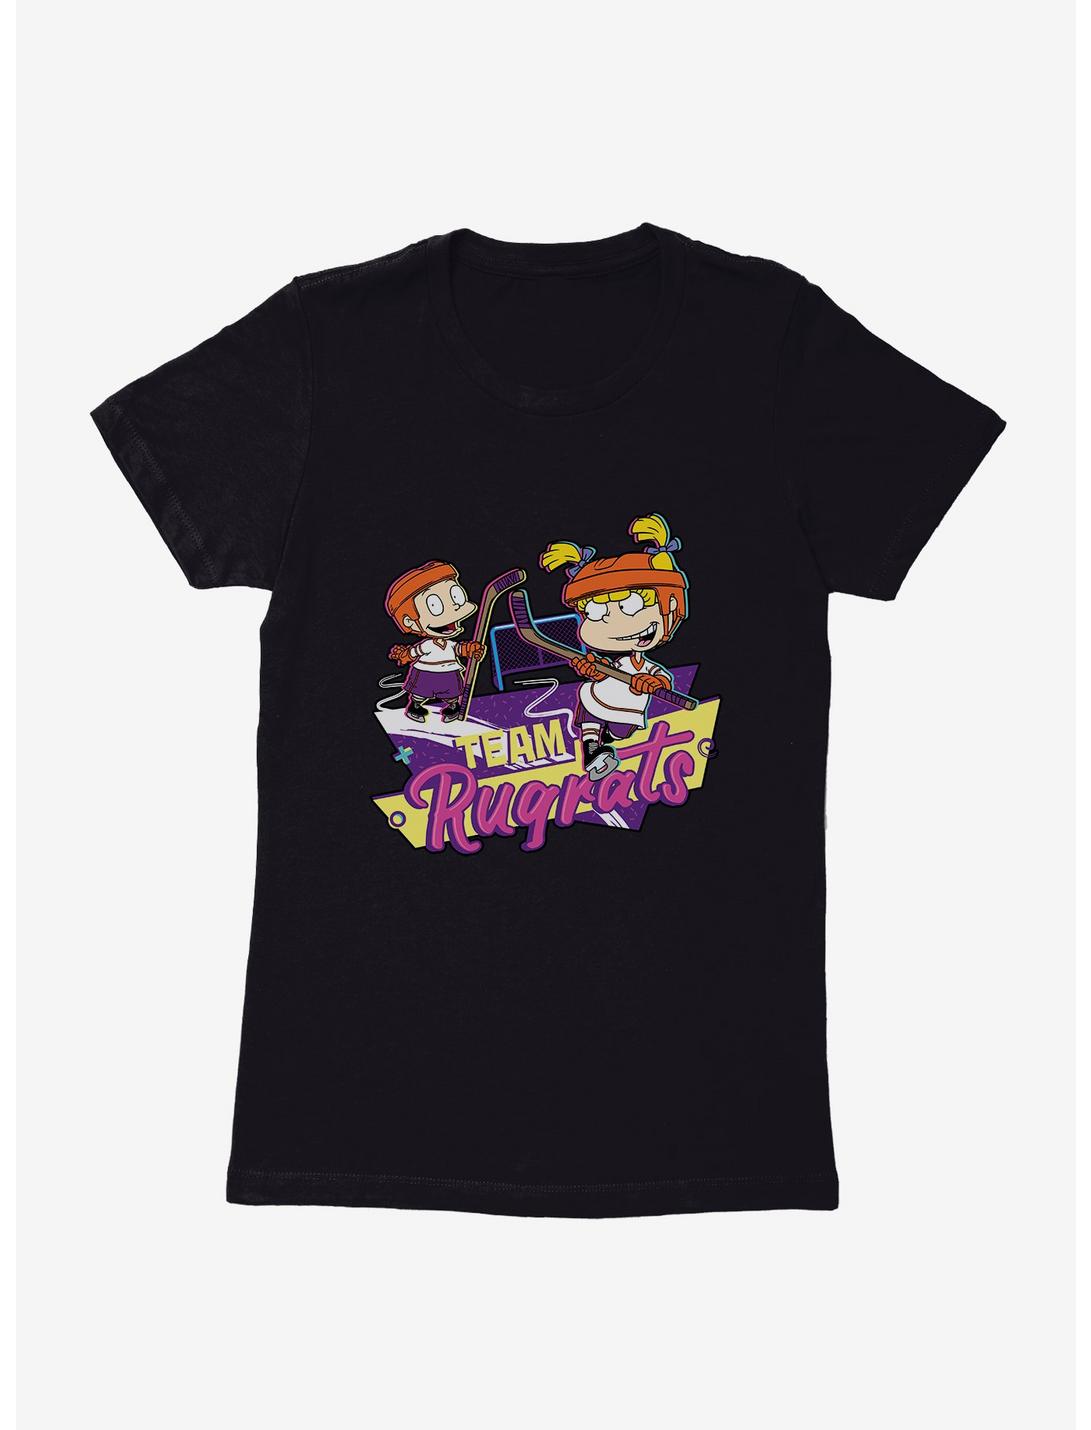 Rugrats Team Rugrats Womens T-Shirt, BLACK, hi-res